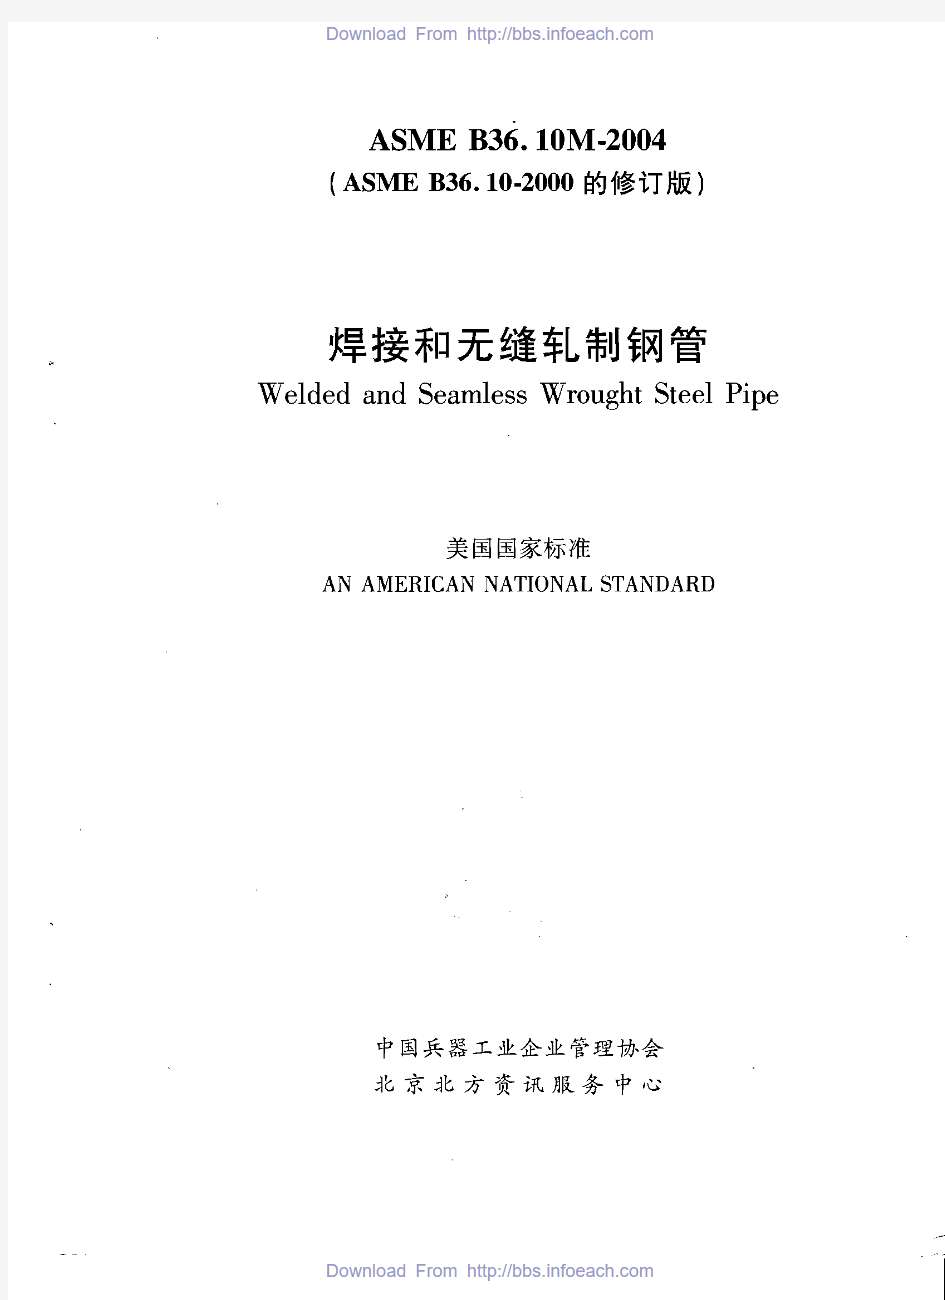 ASME  B36.10-2004 焊接和无缝轧制钢管(中文版)